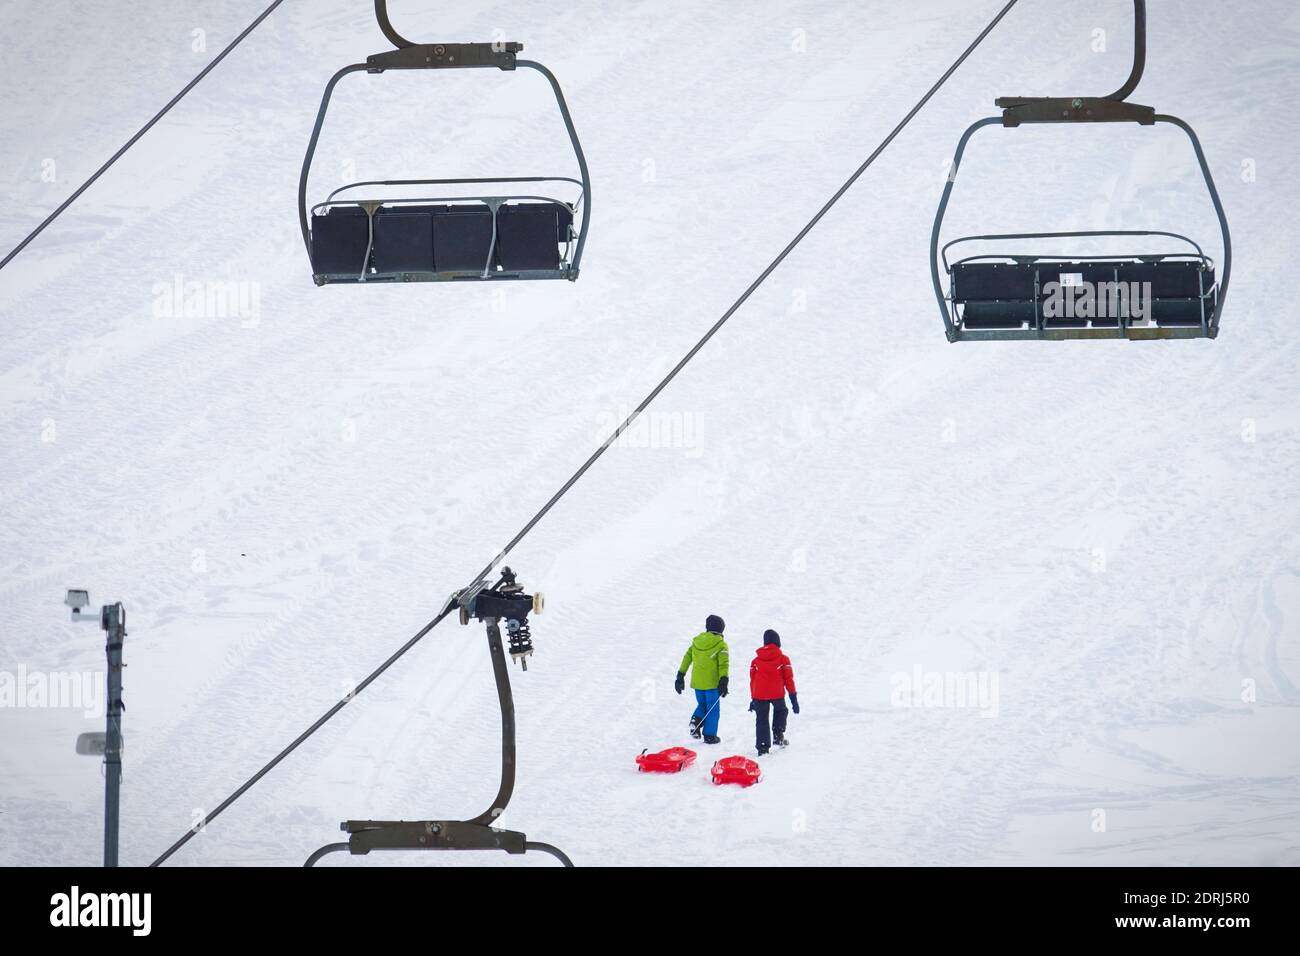 Les pistes de ski sont fermées en raison d'une pandémie à Noël, peu de touristes avec des enfants jouent dans la neige avec des bobsleighs. Sestriere, Italie - décembre 2020 Banque D'Images